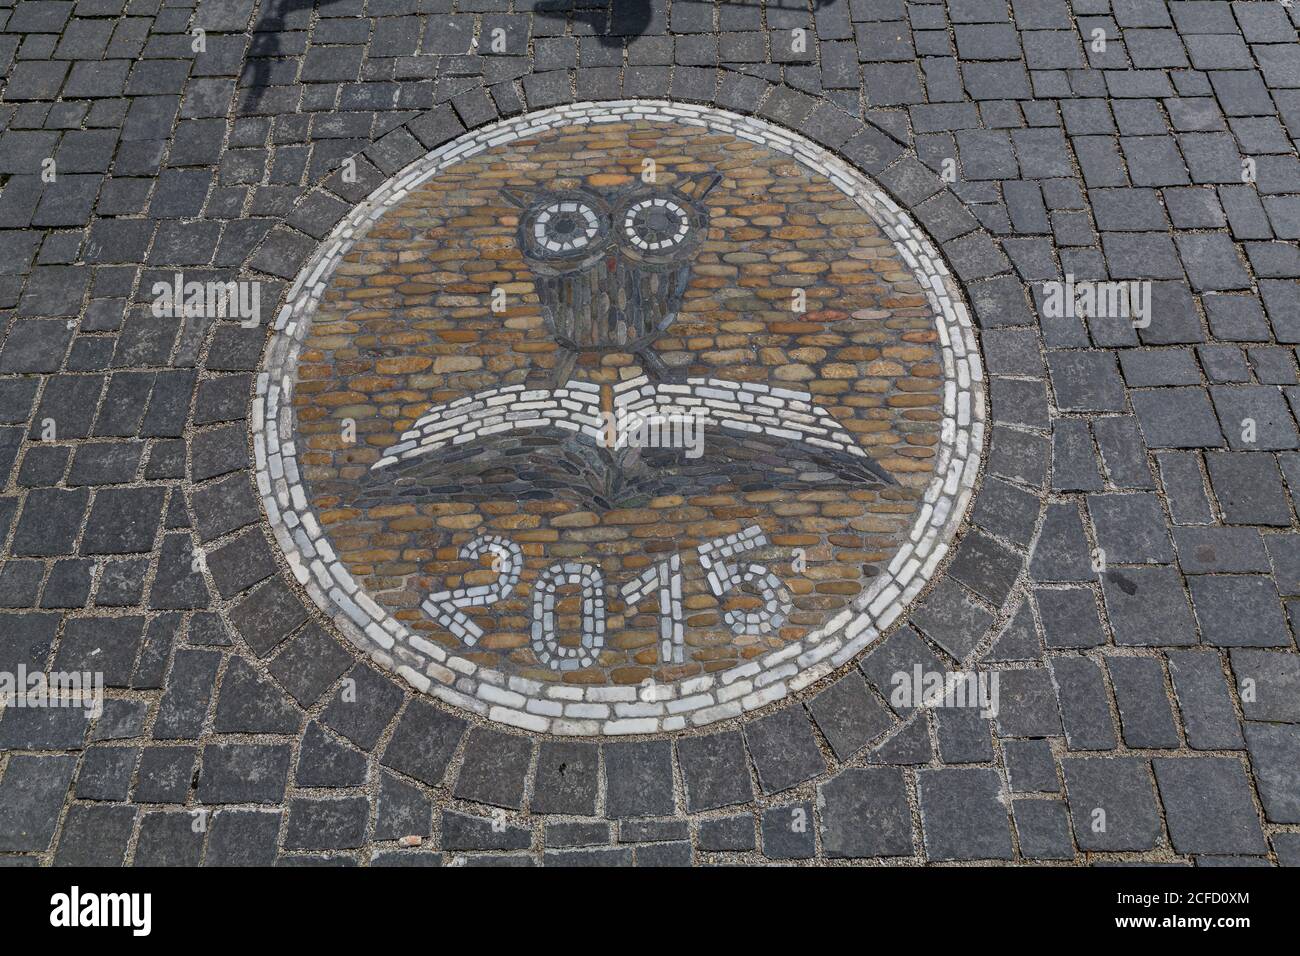 Owl with book, paving stone mosaic, Freiburg, Freiburg im Breisgau, Baden-Württemberg, Germany, Europe Stock Photo